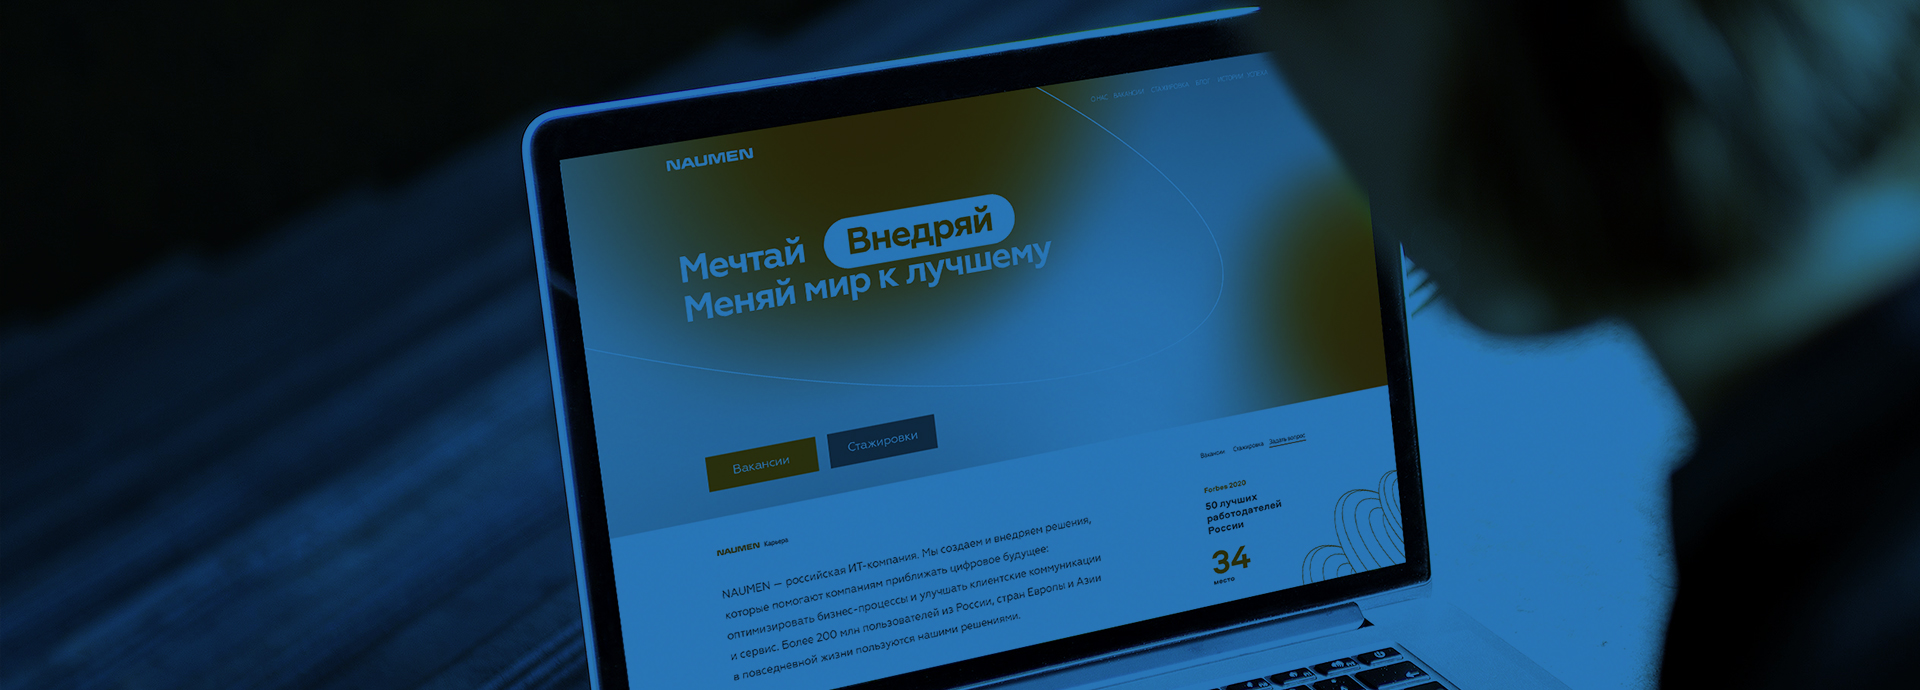 Разработка HR-бренда для российской IT-компании